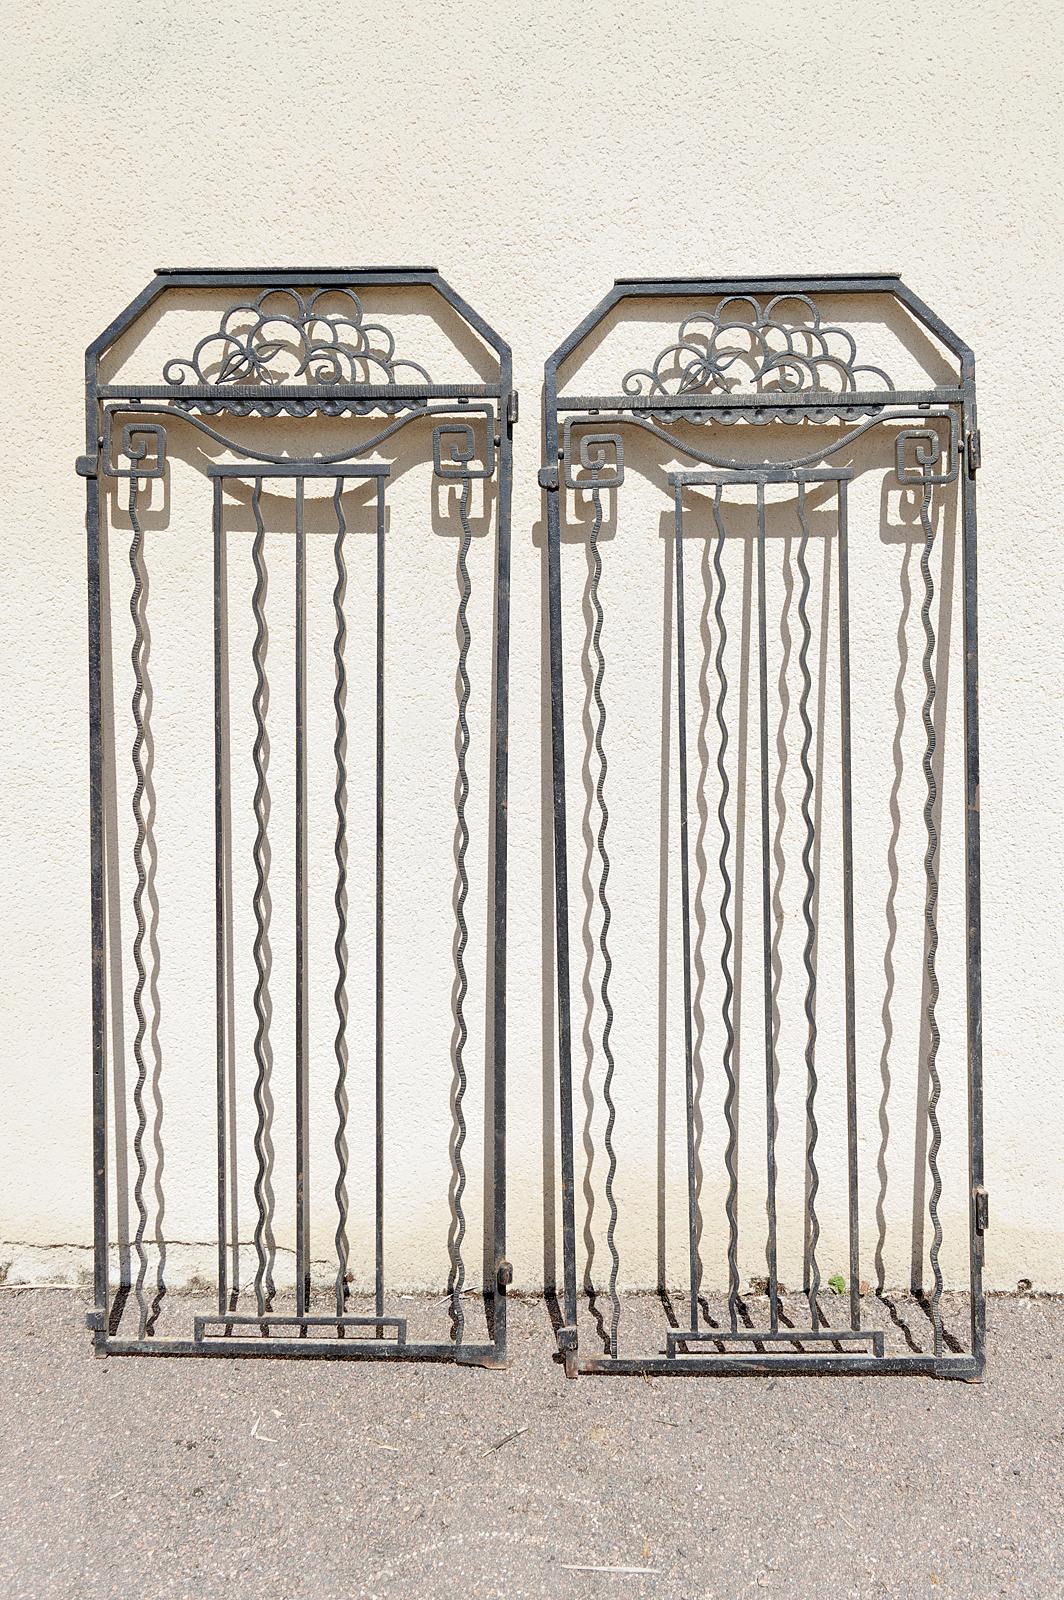 Alte Aufzugstüren/Gitter.

In gutem Allgemeinzustand, einige Gebrauchs- und Oxidationsspuren

Frankreich, Art Deco, um 1925

Obstkorb an der Spitze

Abmessungen:
Höhe 183 cm
Breite 72 cm
Tiefe 8 cm

Gewicht: +/- 50/60kg für jede Tür